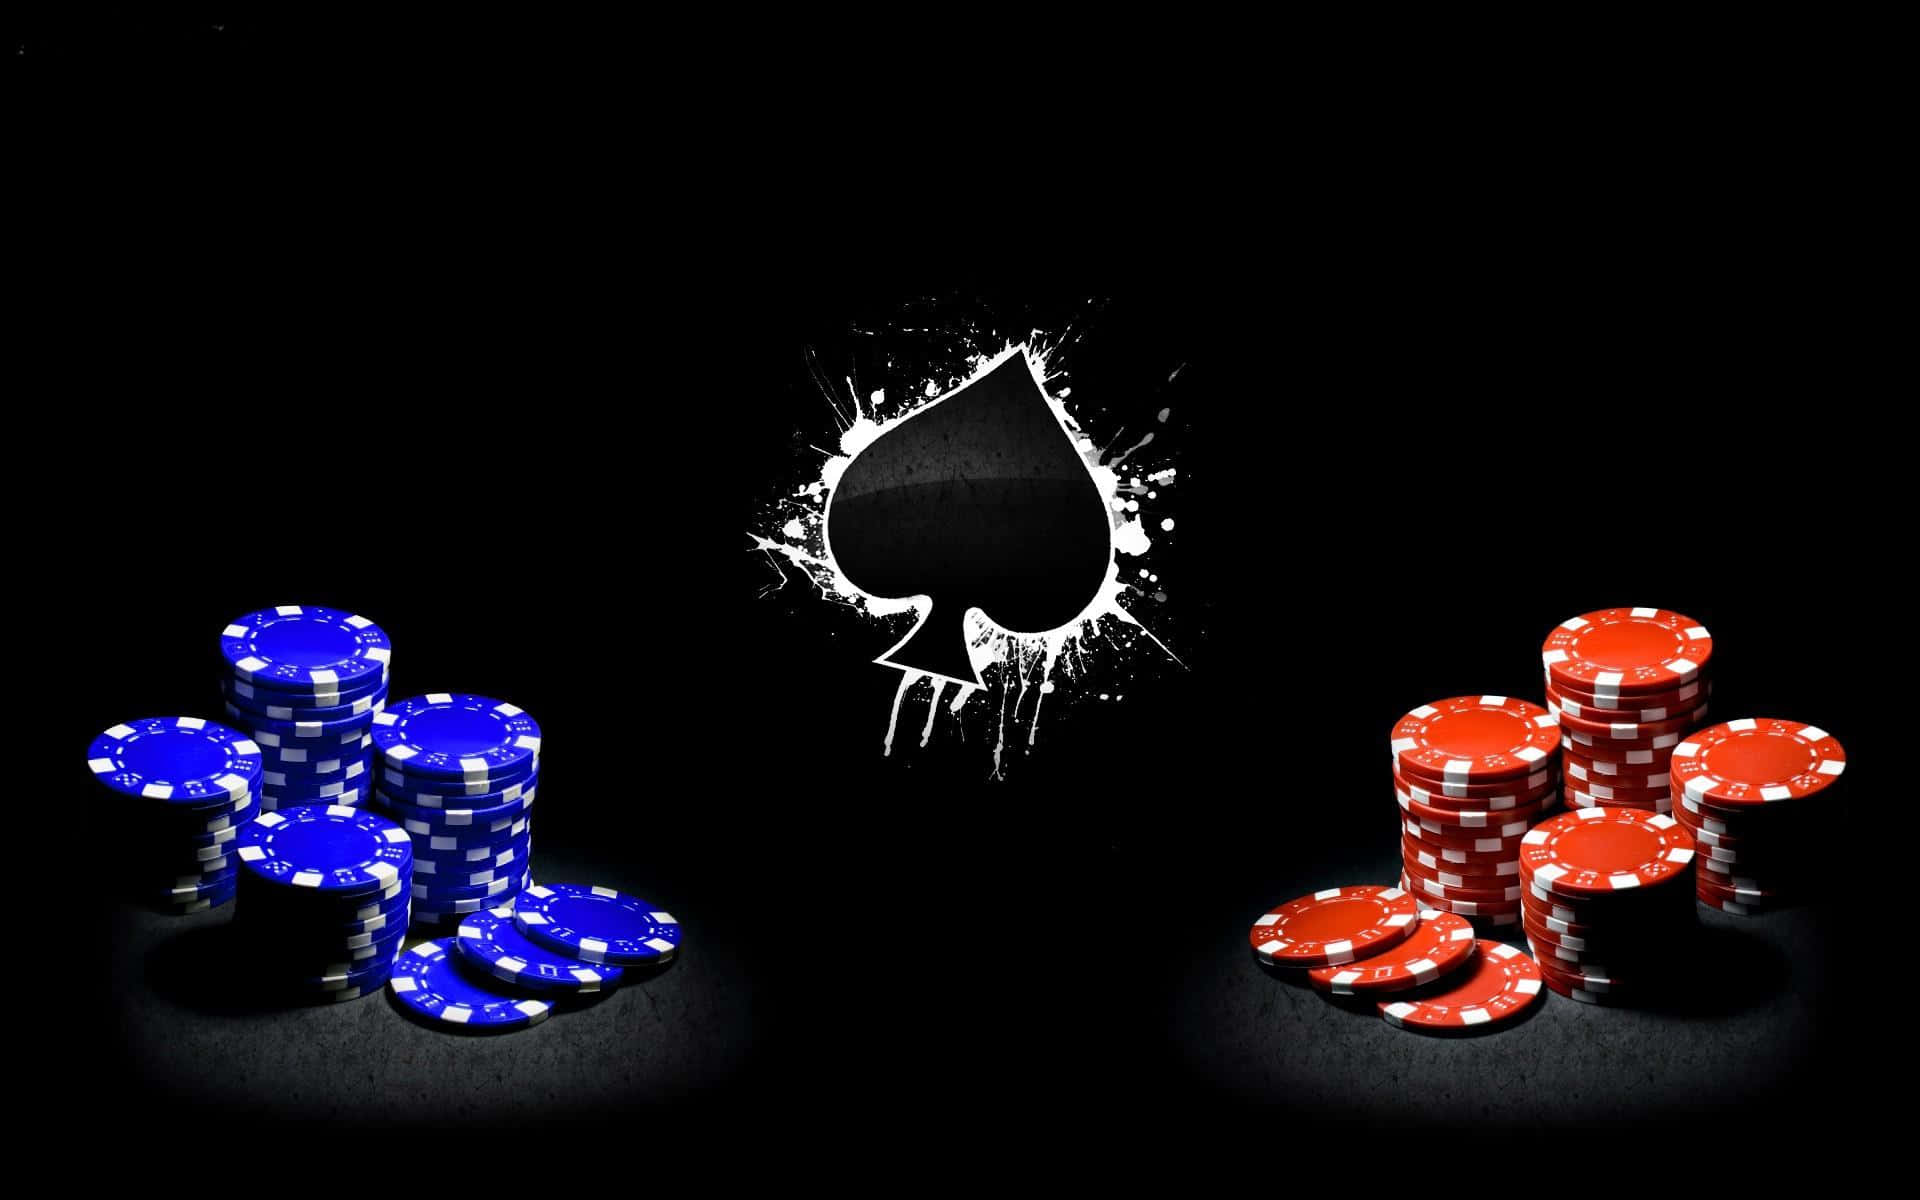 Winning The Hand Of Poker